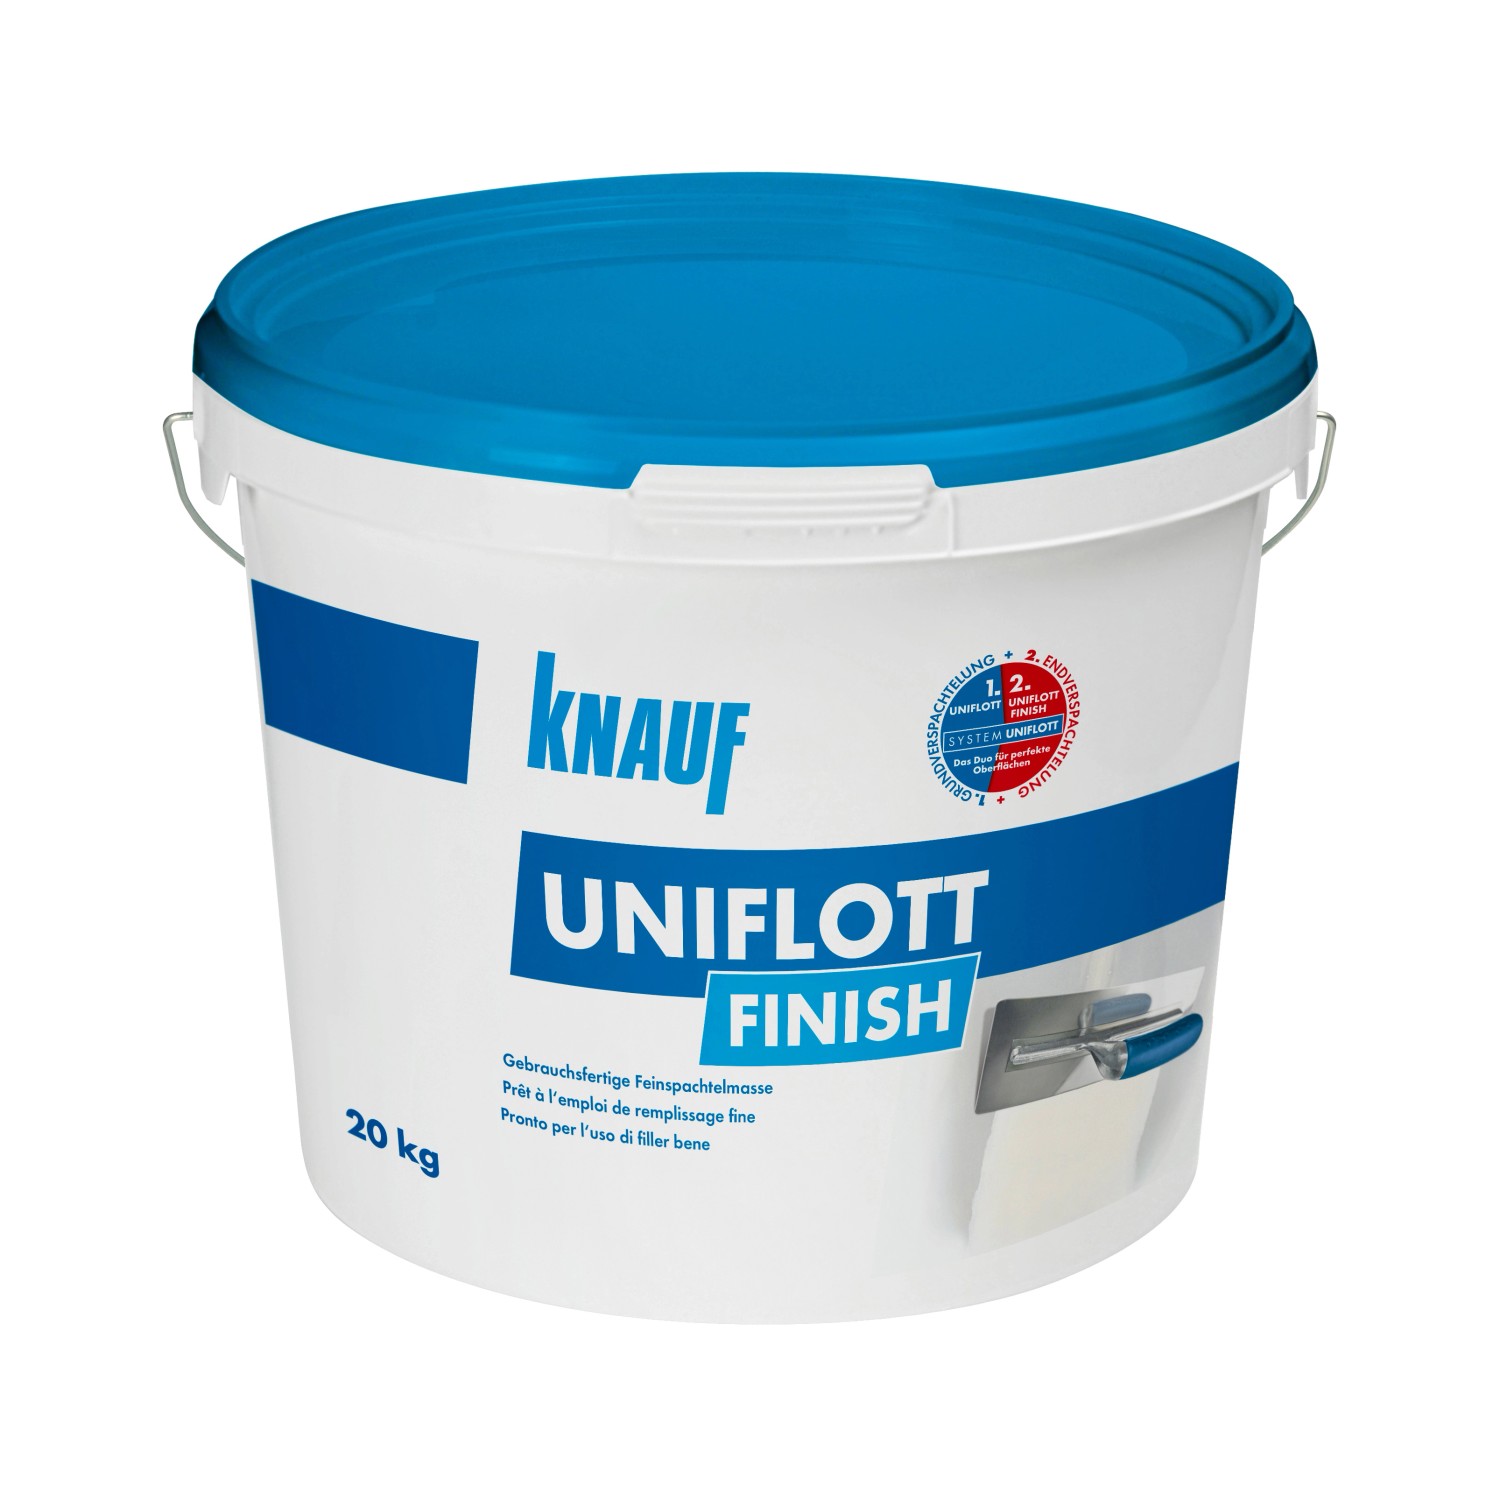 Knauf Feinspachtelmasse Uniflott Finish 20 kg